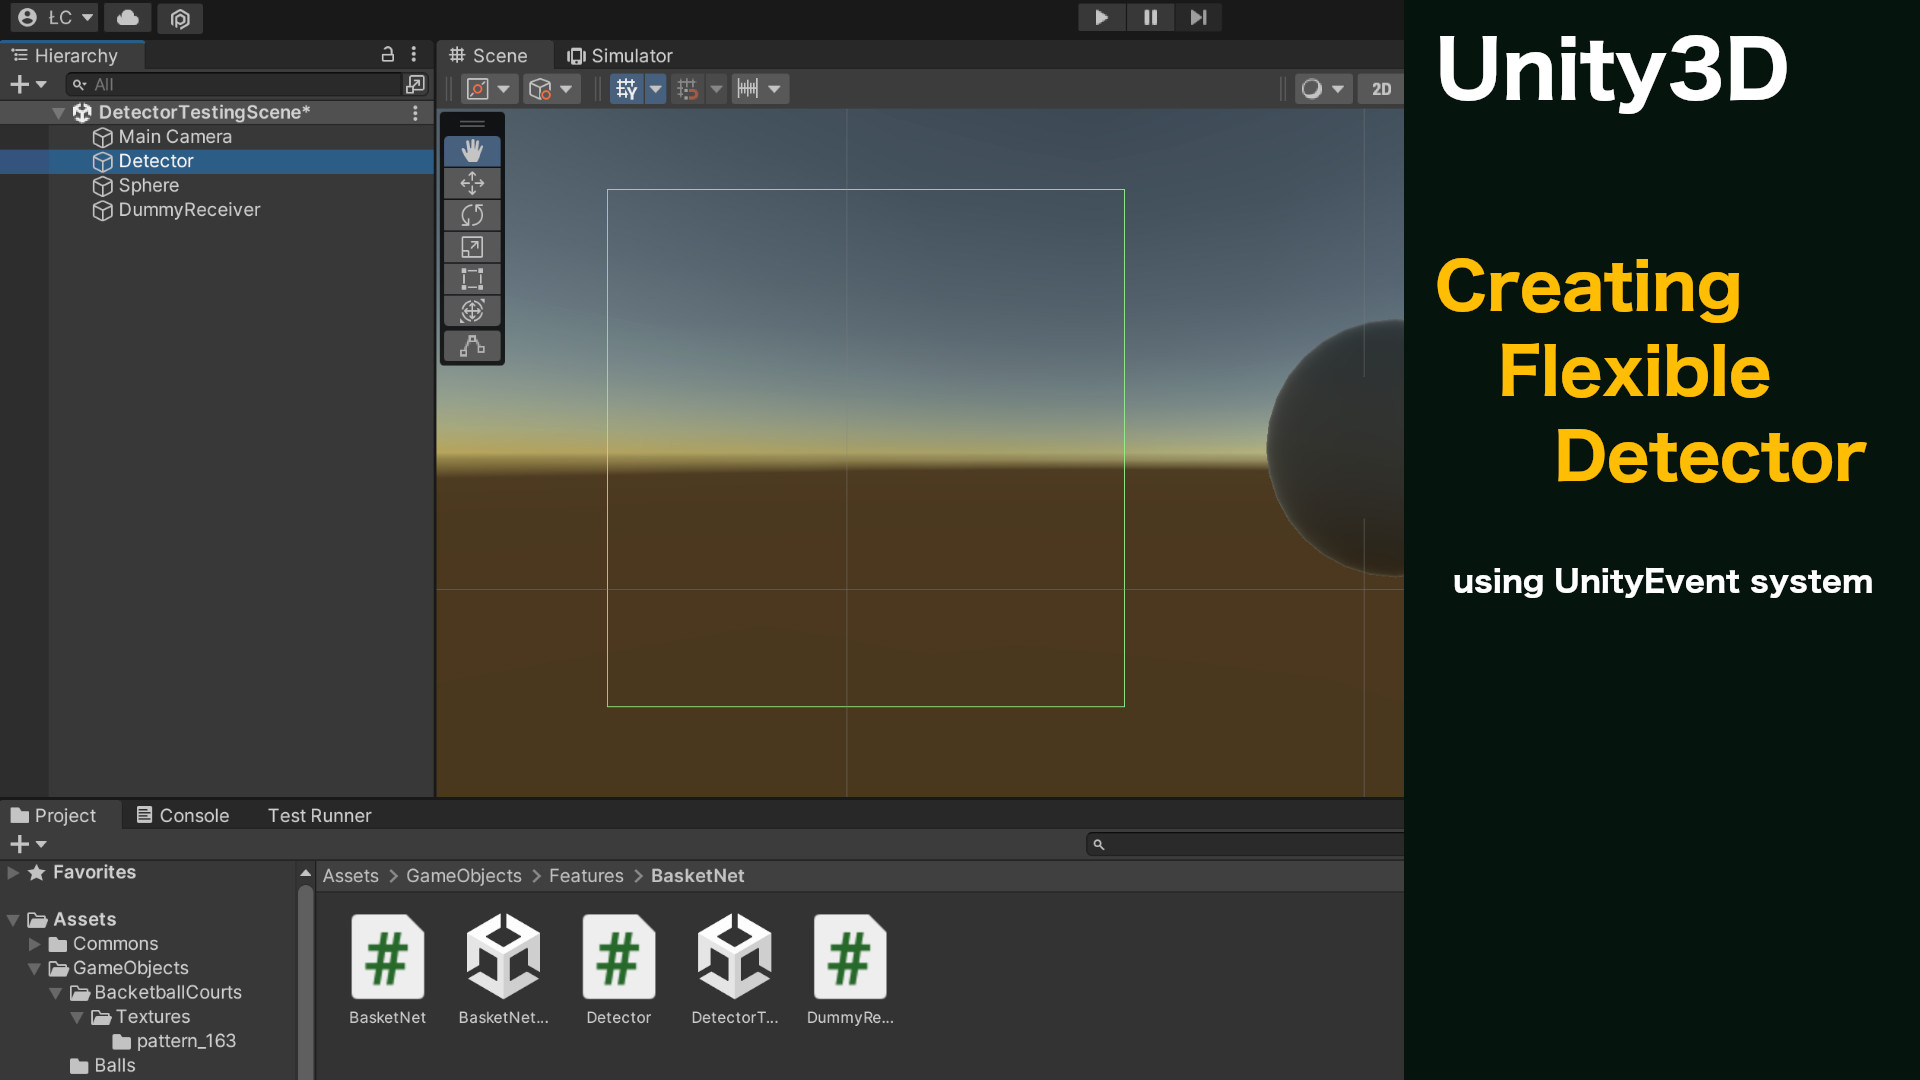 Unity3D: Budujemy uniwersalny detektor w oparciu o UnityEvent system